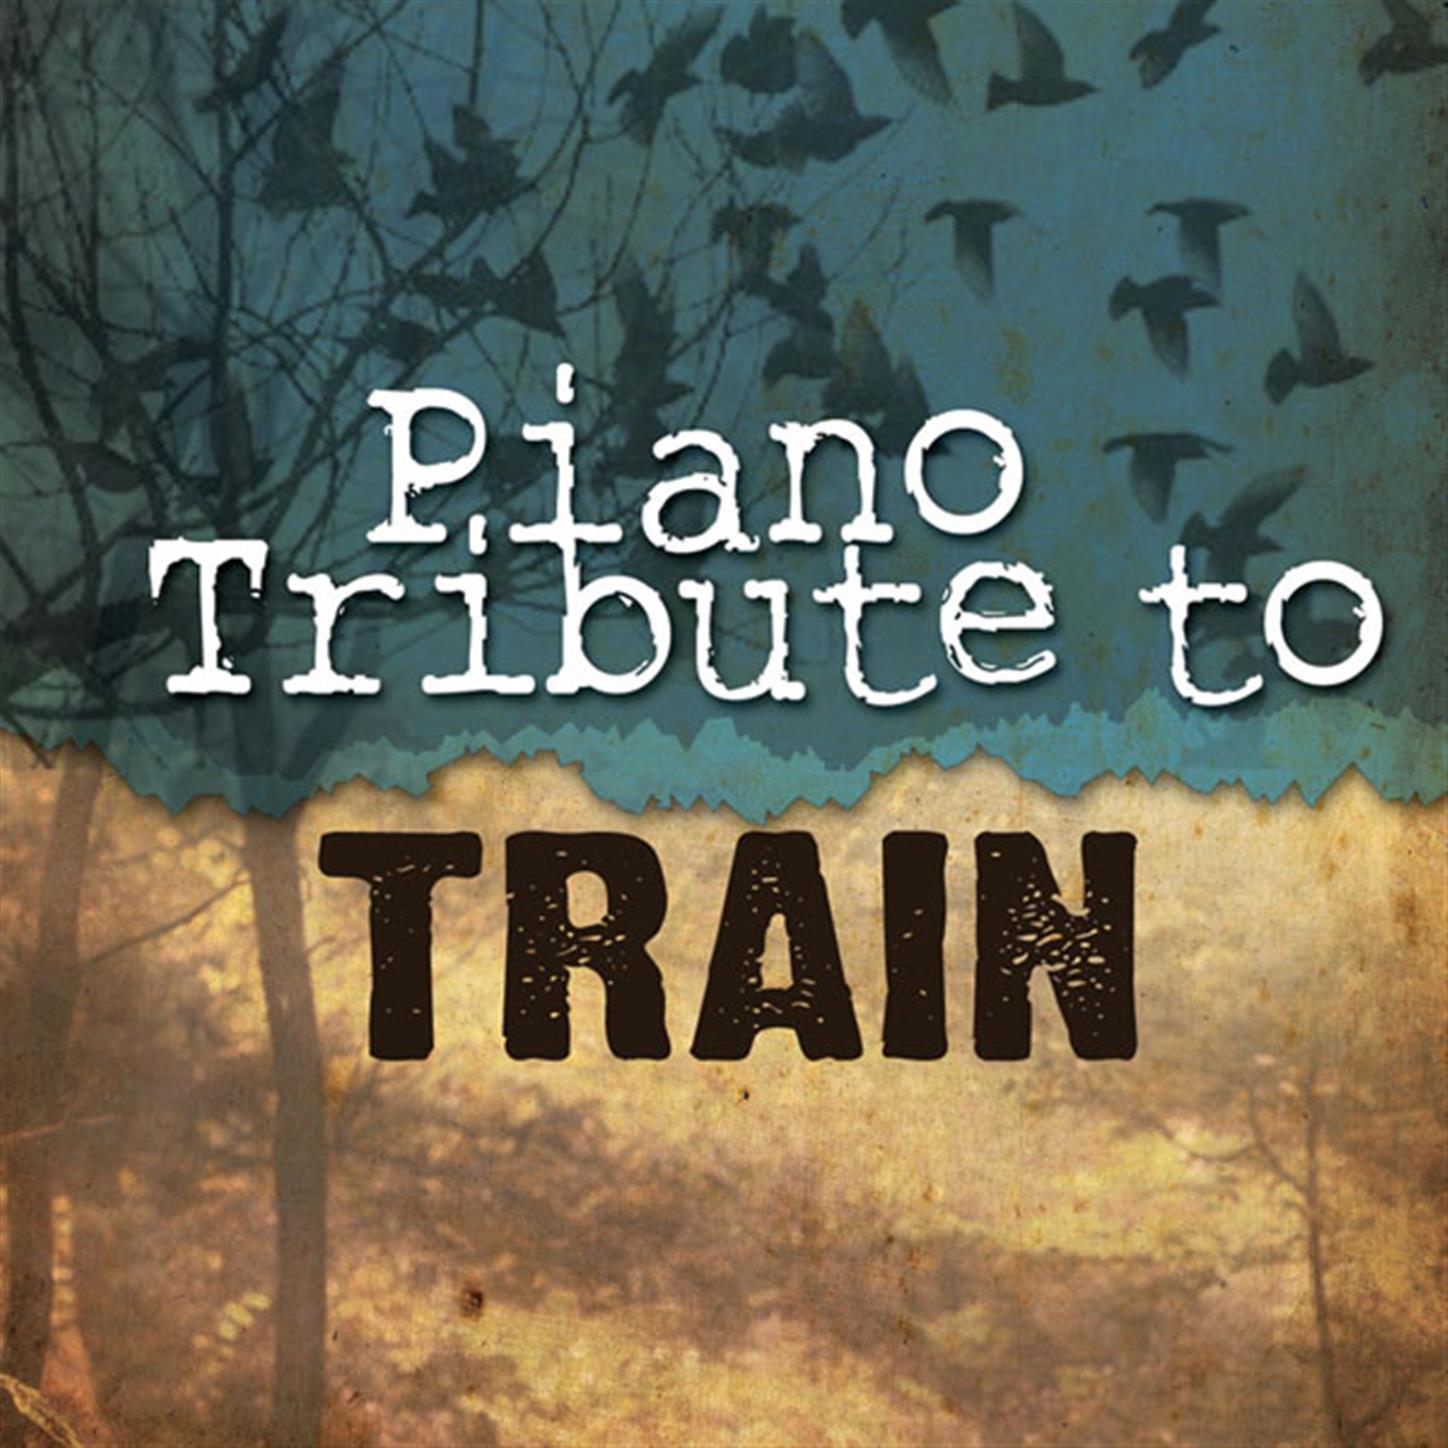 Train Piano Tribute专辑